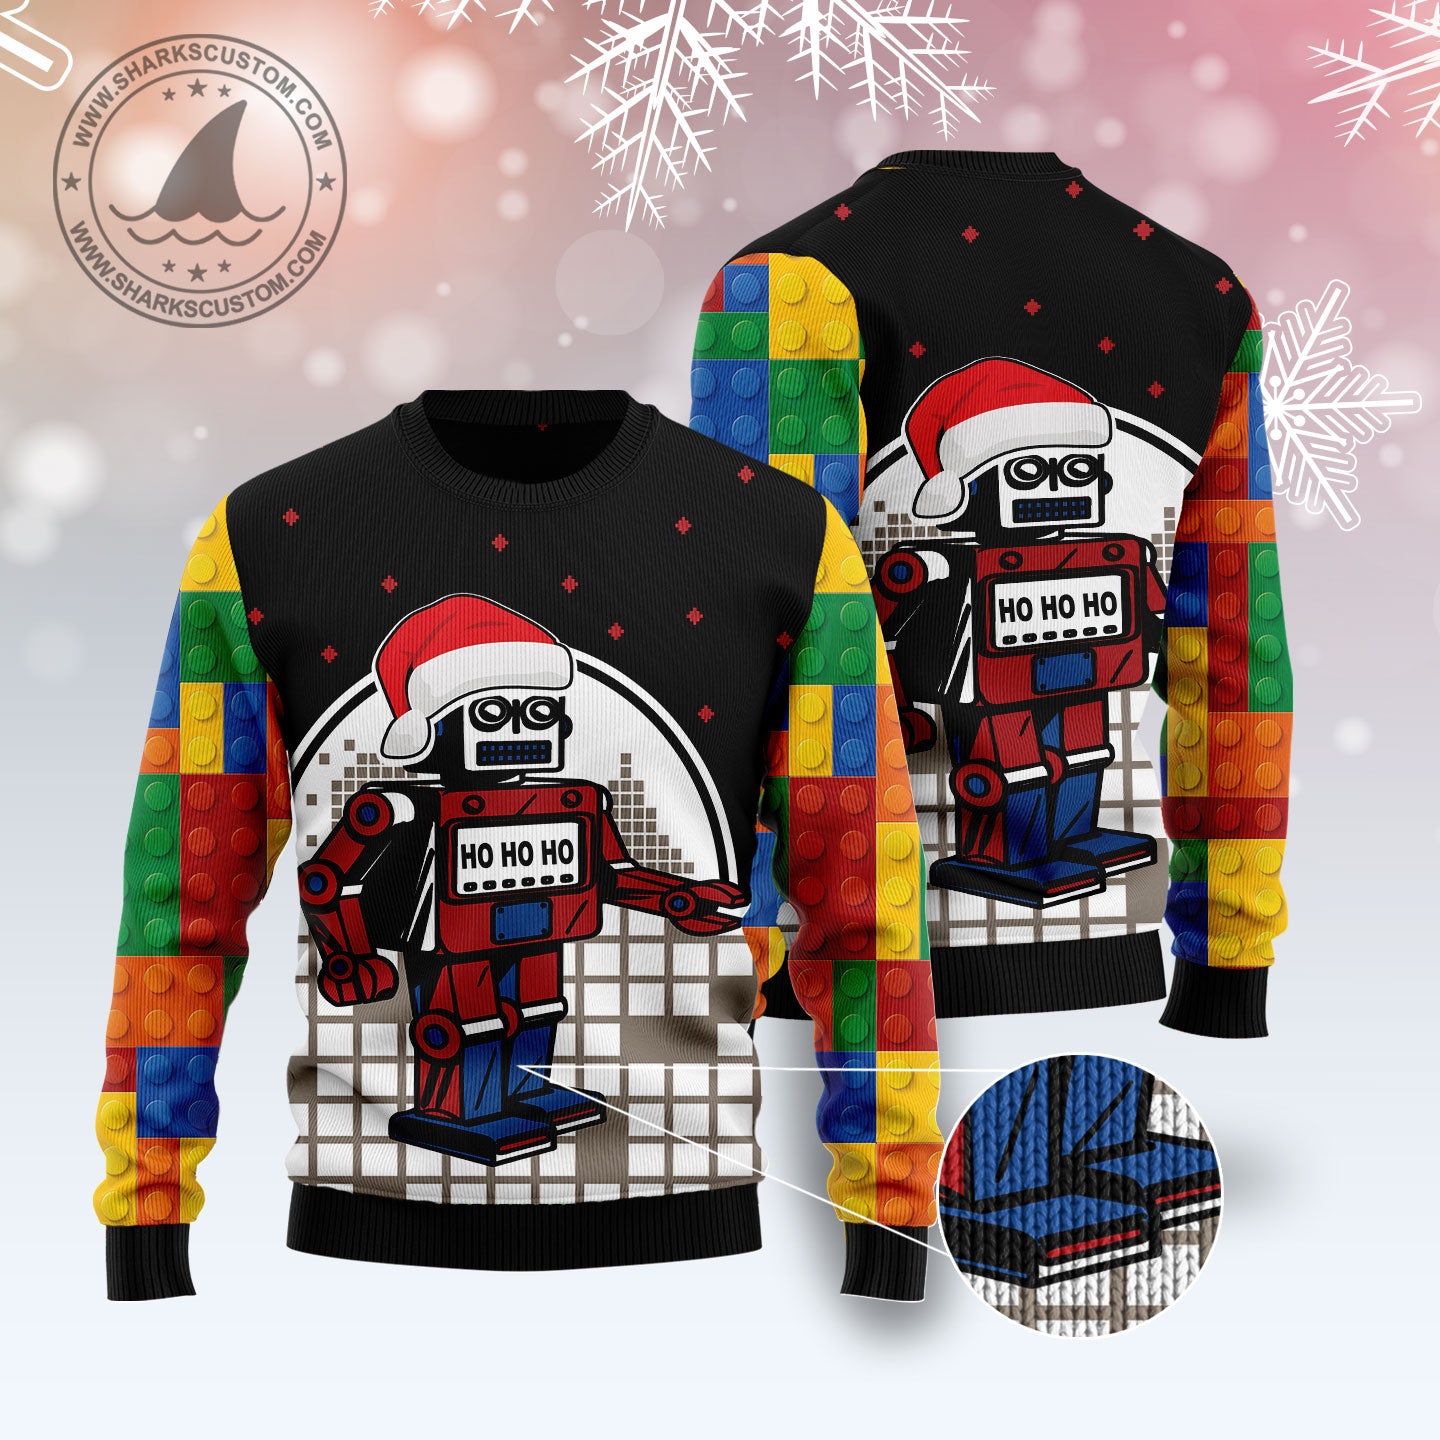 Lego Hohoho T1910 Ugly Christmas Sweater